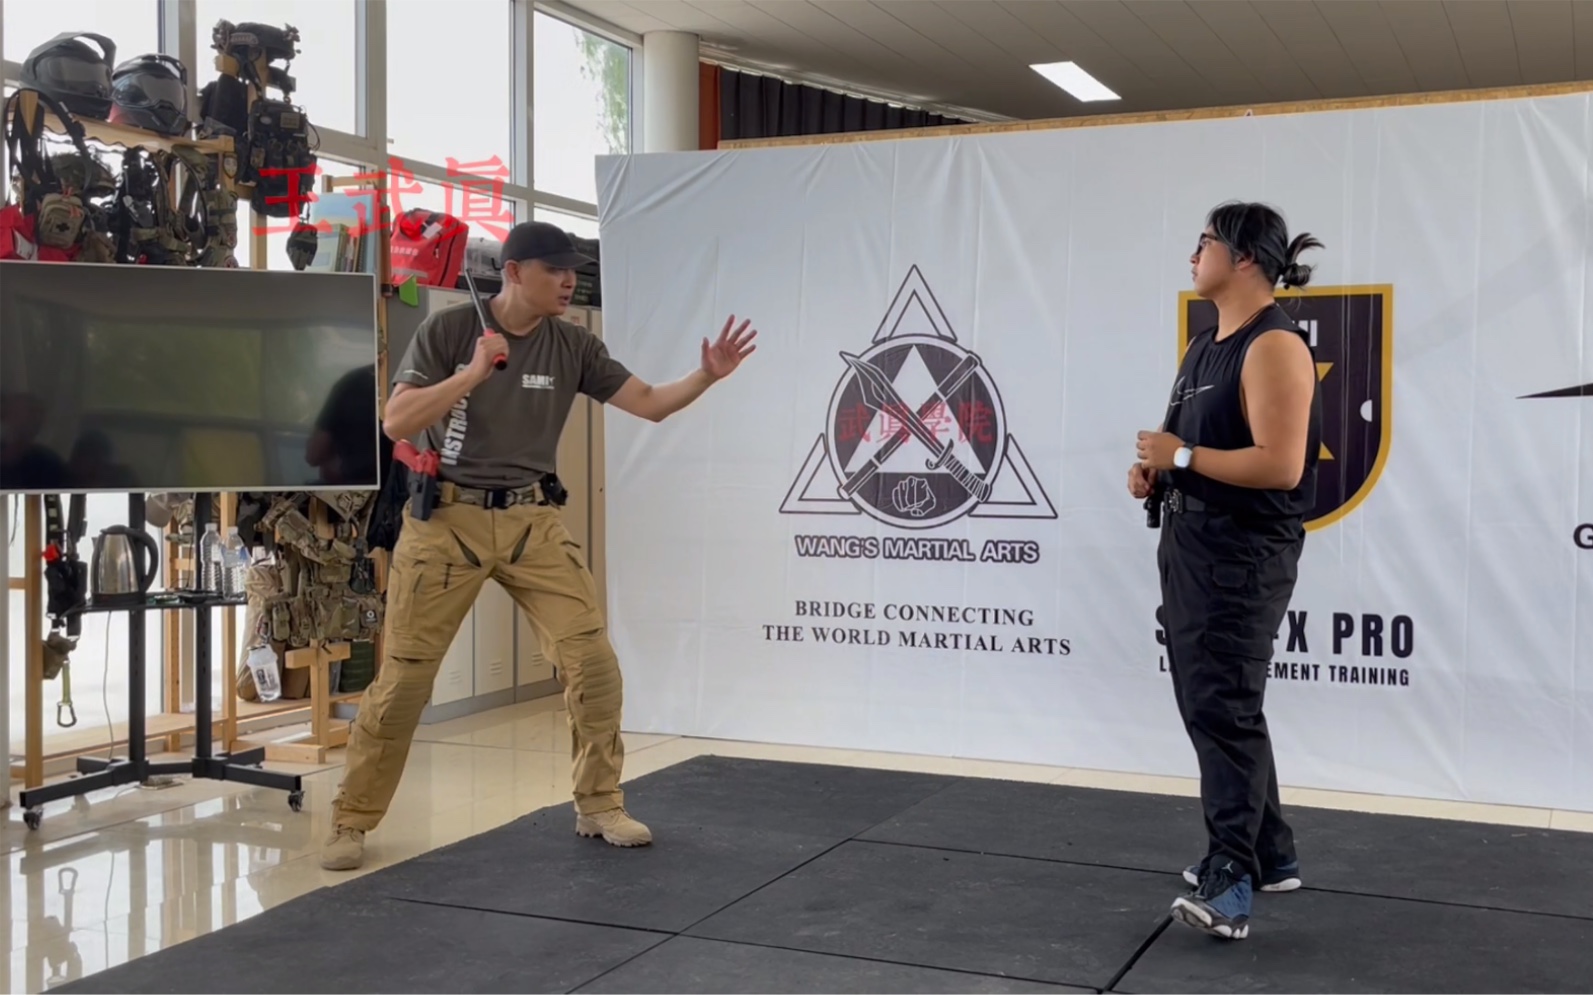 SAMI-X PRO（KAPAP）课程，包含徒手防御、解脱、控制、团队合作、枪械近距离格斗与保护。下周开一期新课程，训练警务实际应用。